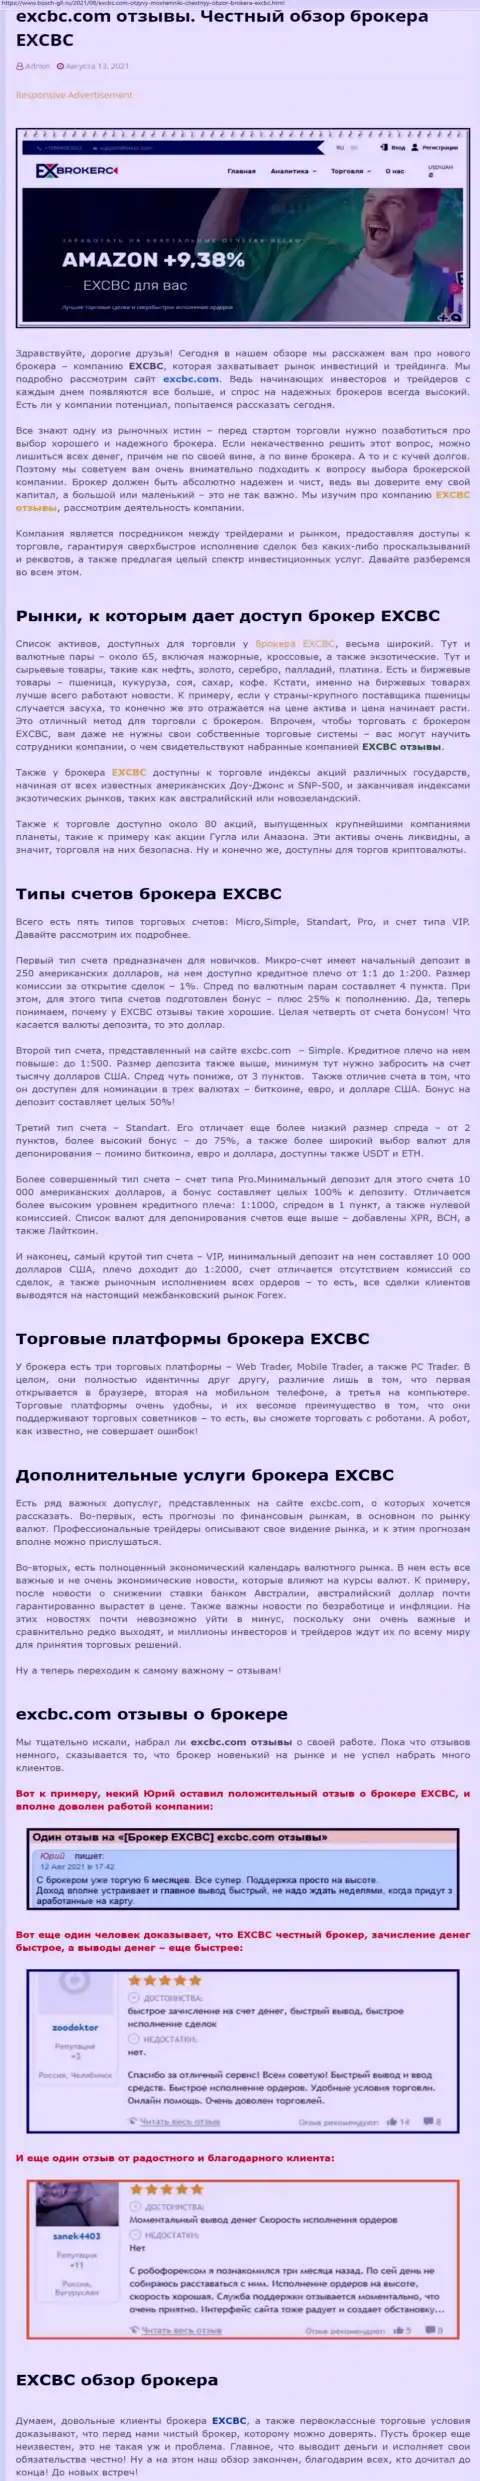 Информационный материал о FOREX-брокерской организации ЕХЧЕНЖБК Лтд Инк на сайте bosch gll ru